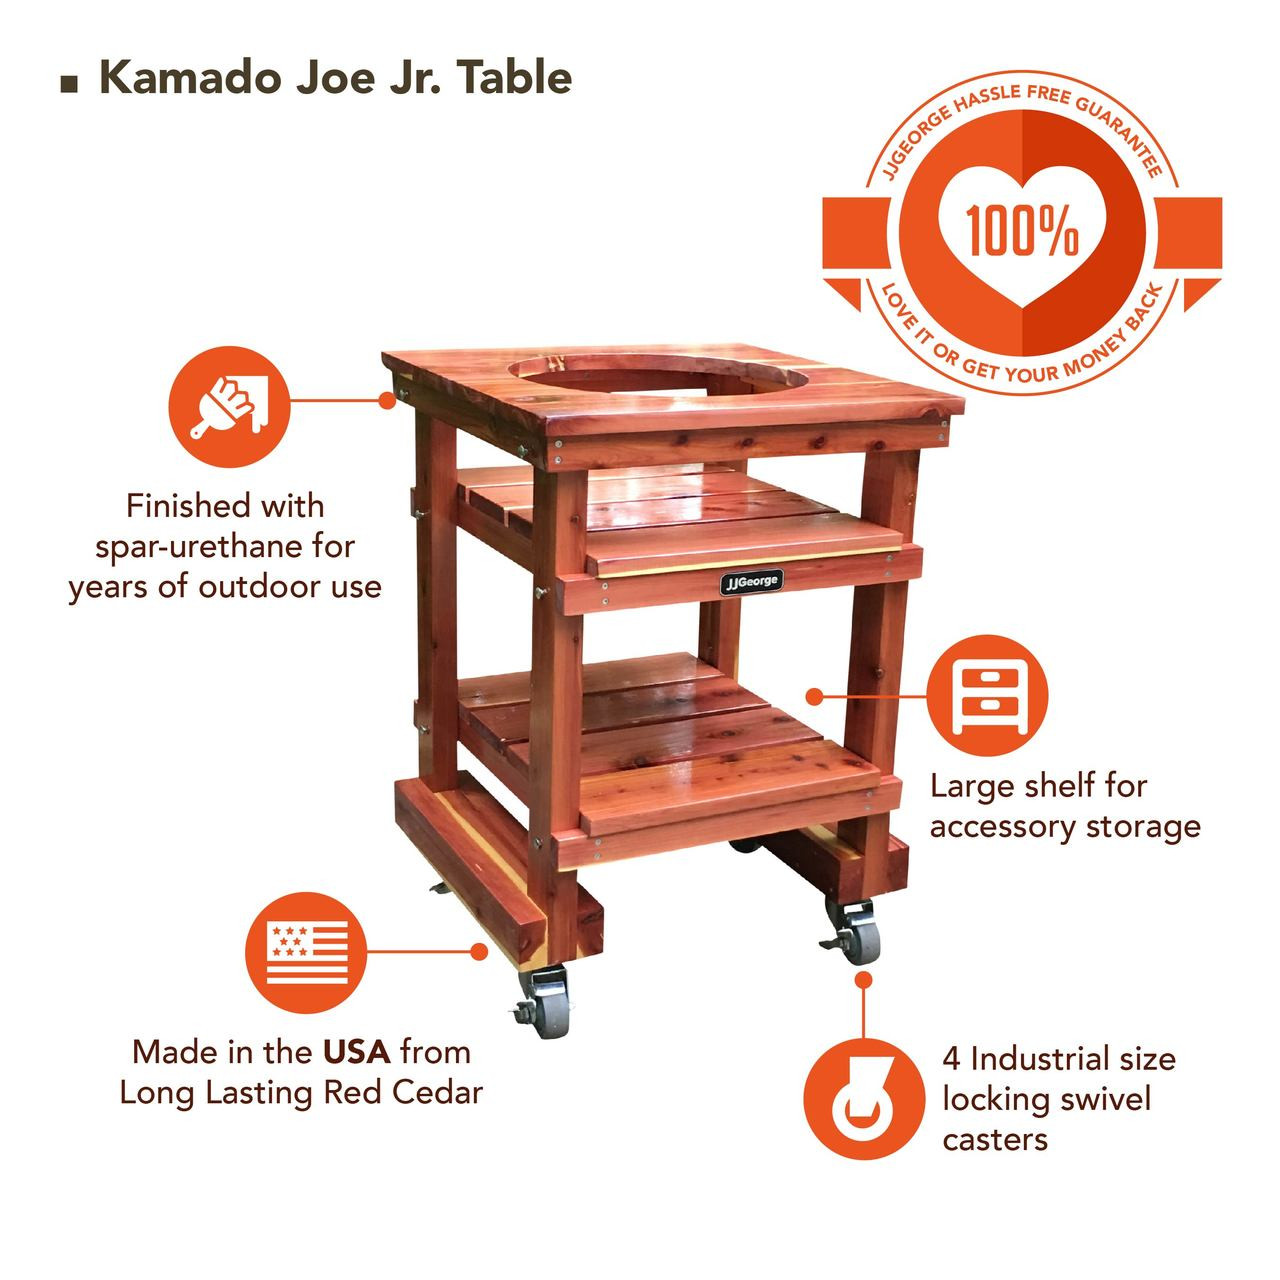 Kamado Joe Jr Table Best Joe | Table Kamado Joe